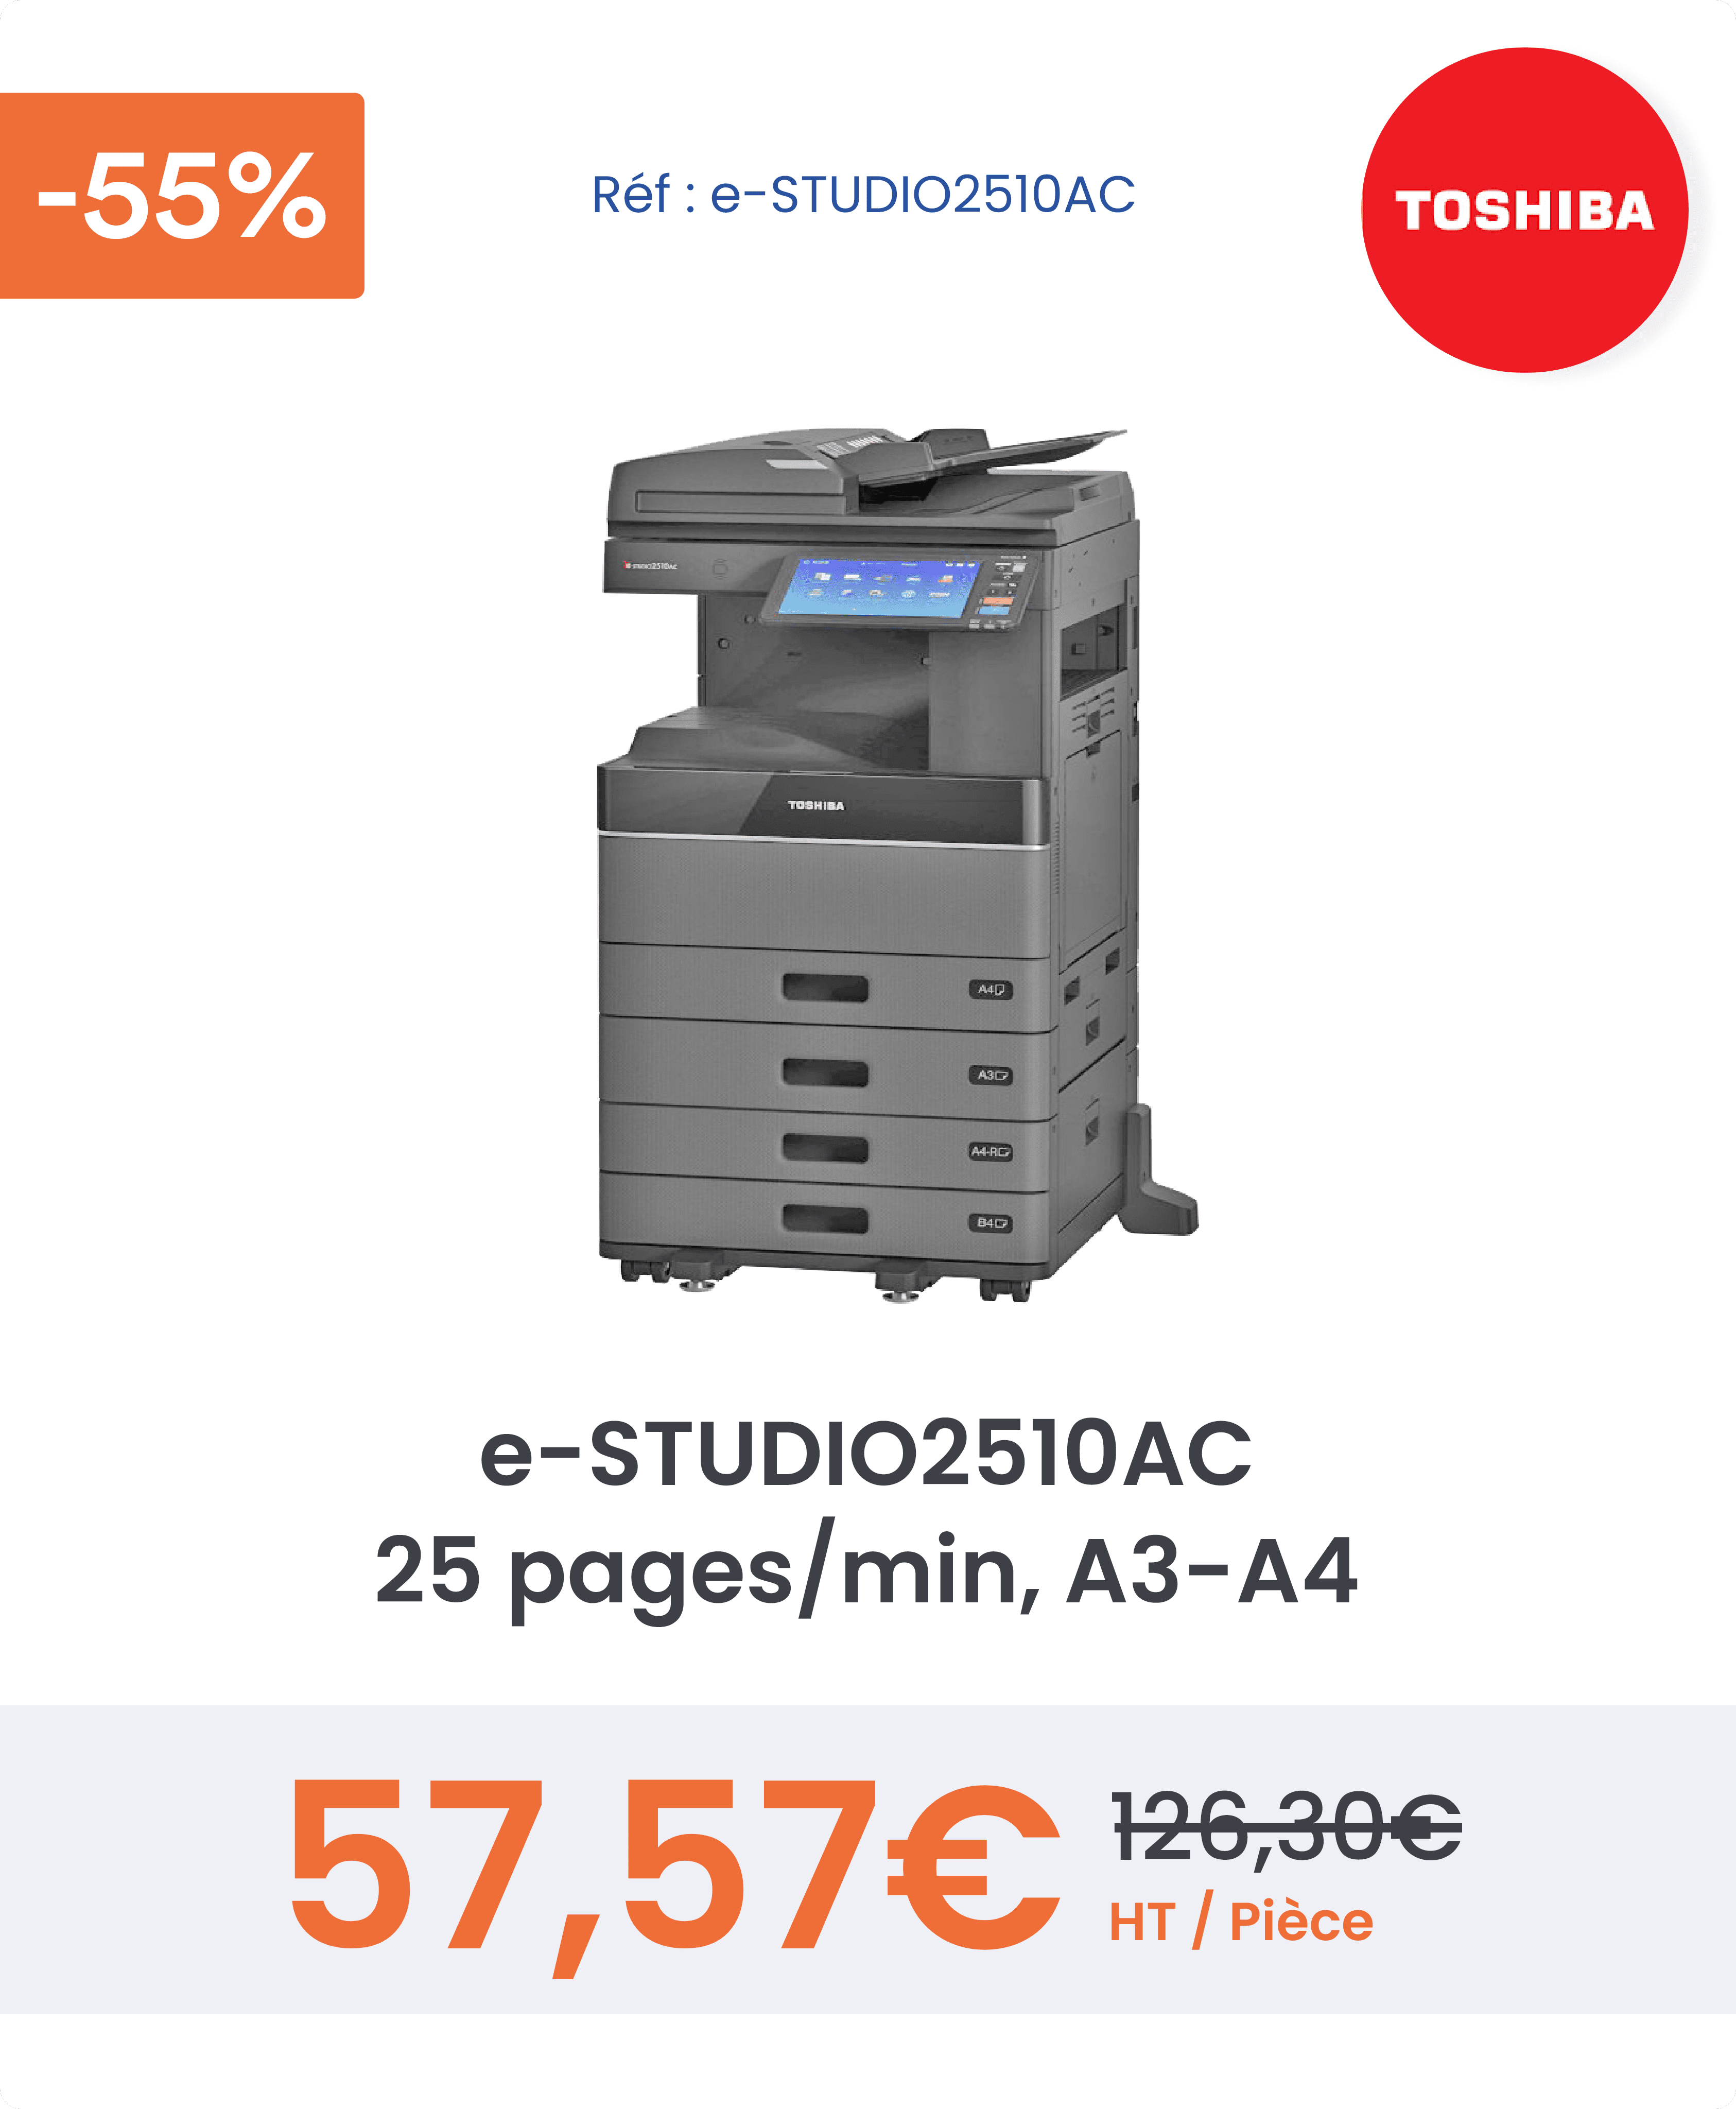 Offre négociée sur le photocopieur Toshiba e-studio2510AC